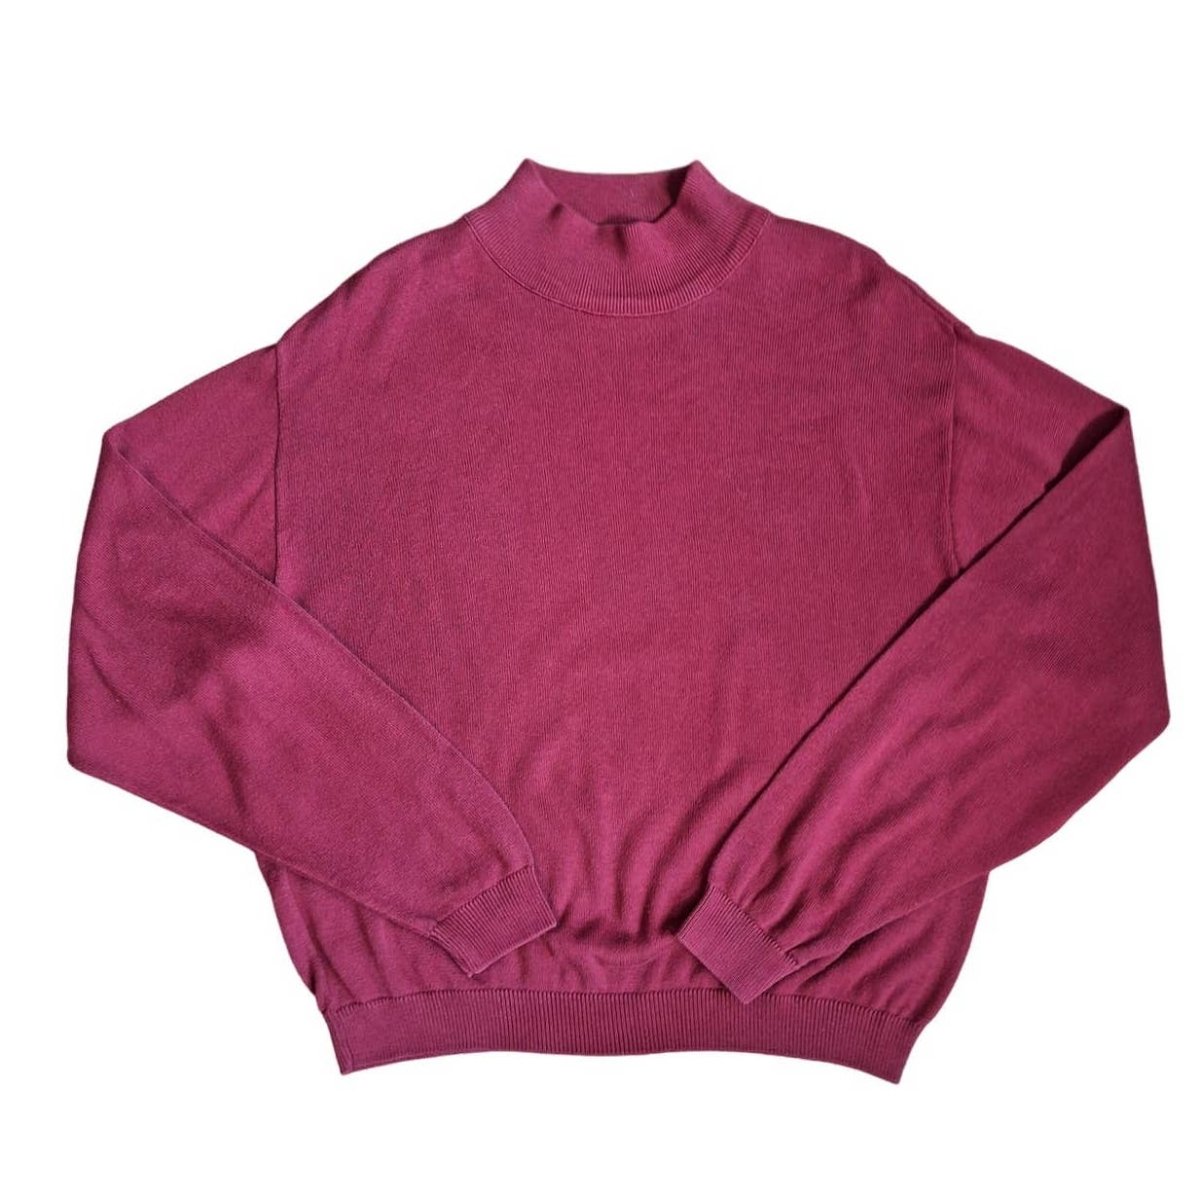 Vintage 90s Cotton Pendleton Sweater Size XL - themallvintage The Mall Vintage